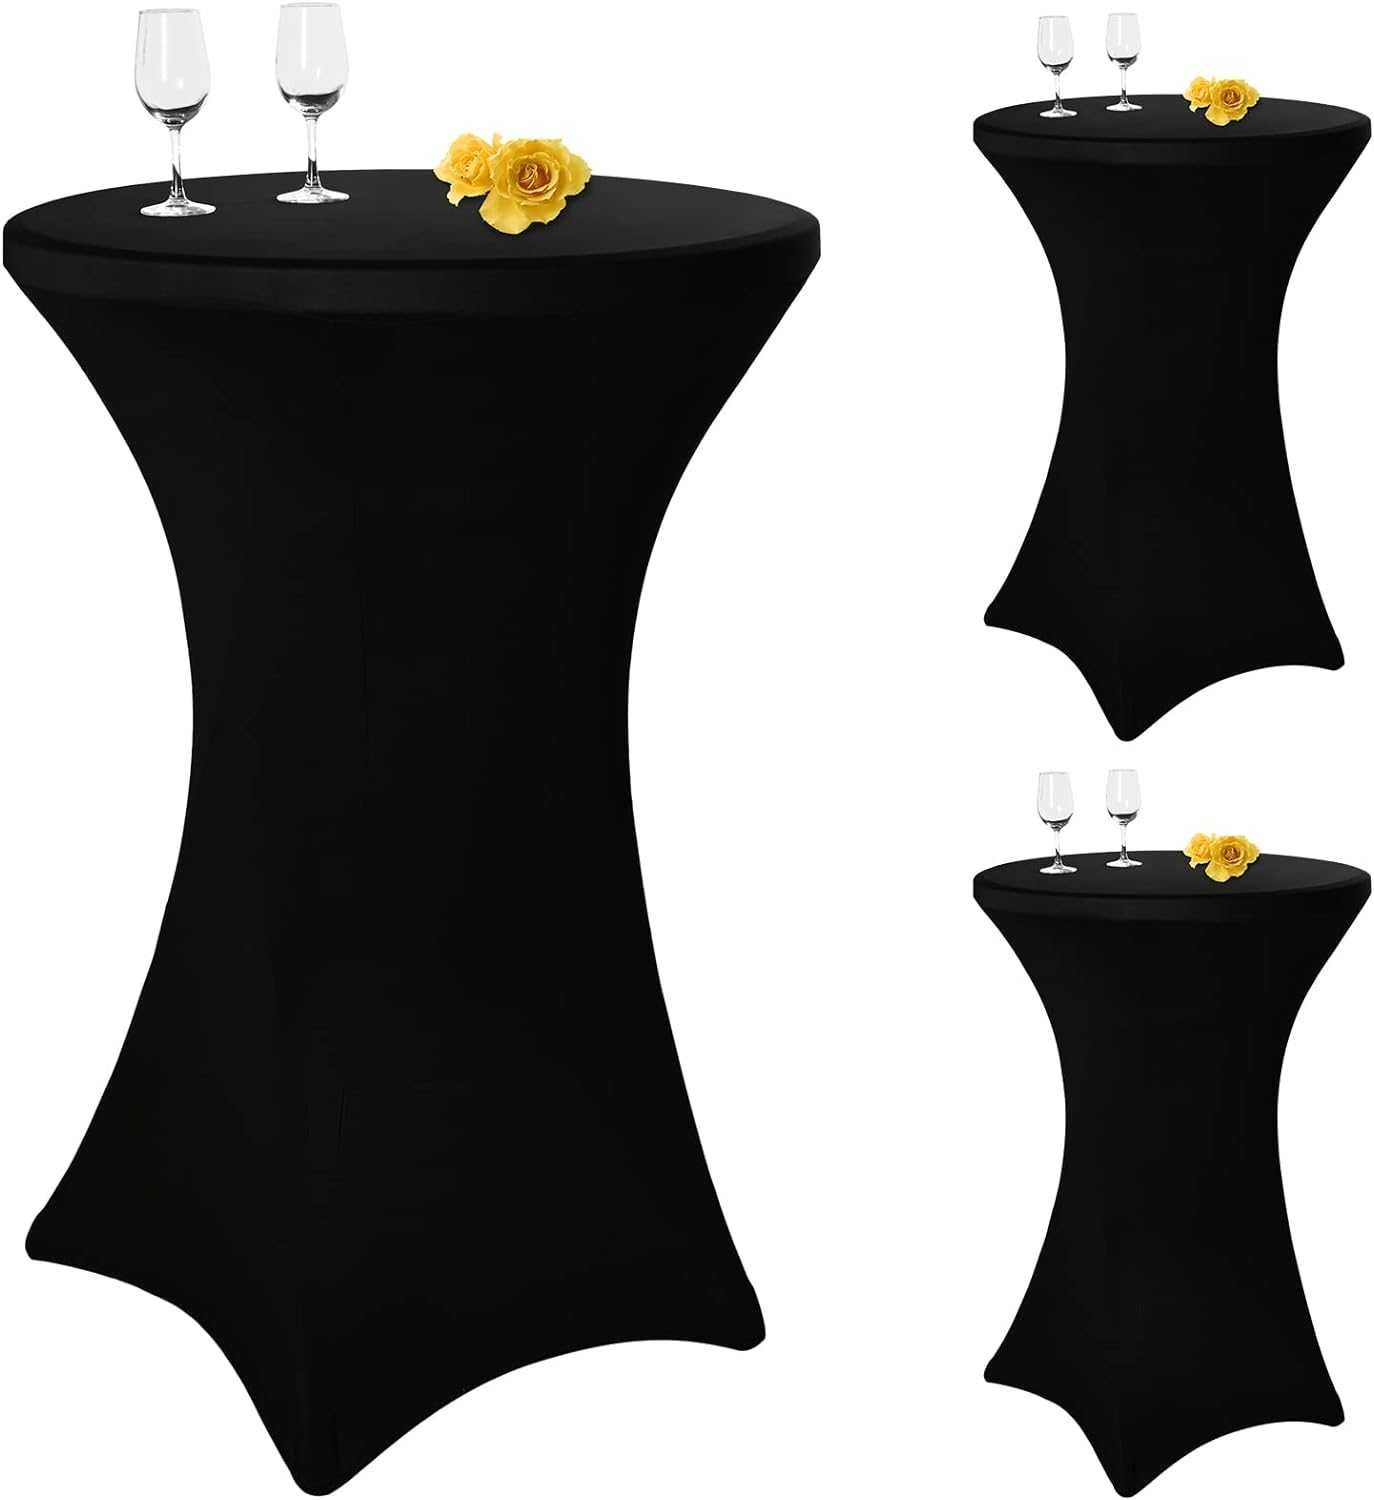 Nowe elastyczne pokrowce na stoły / 80-85cm / 3szt / czarne !3647!